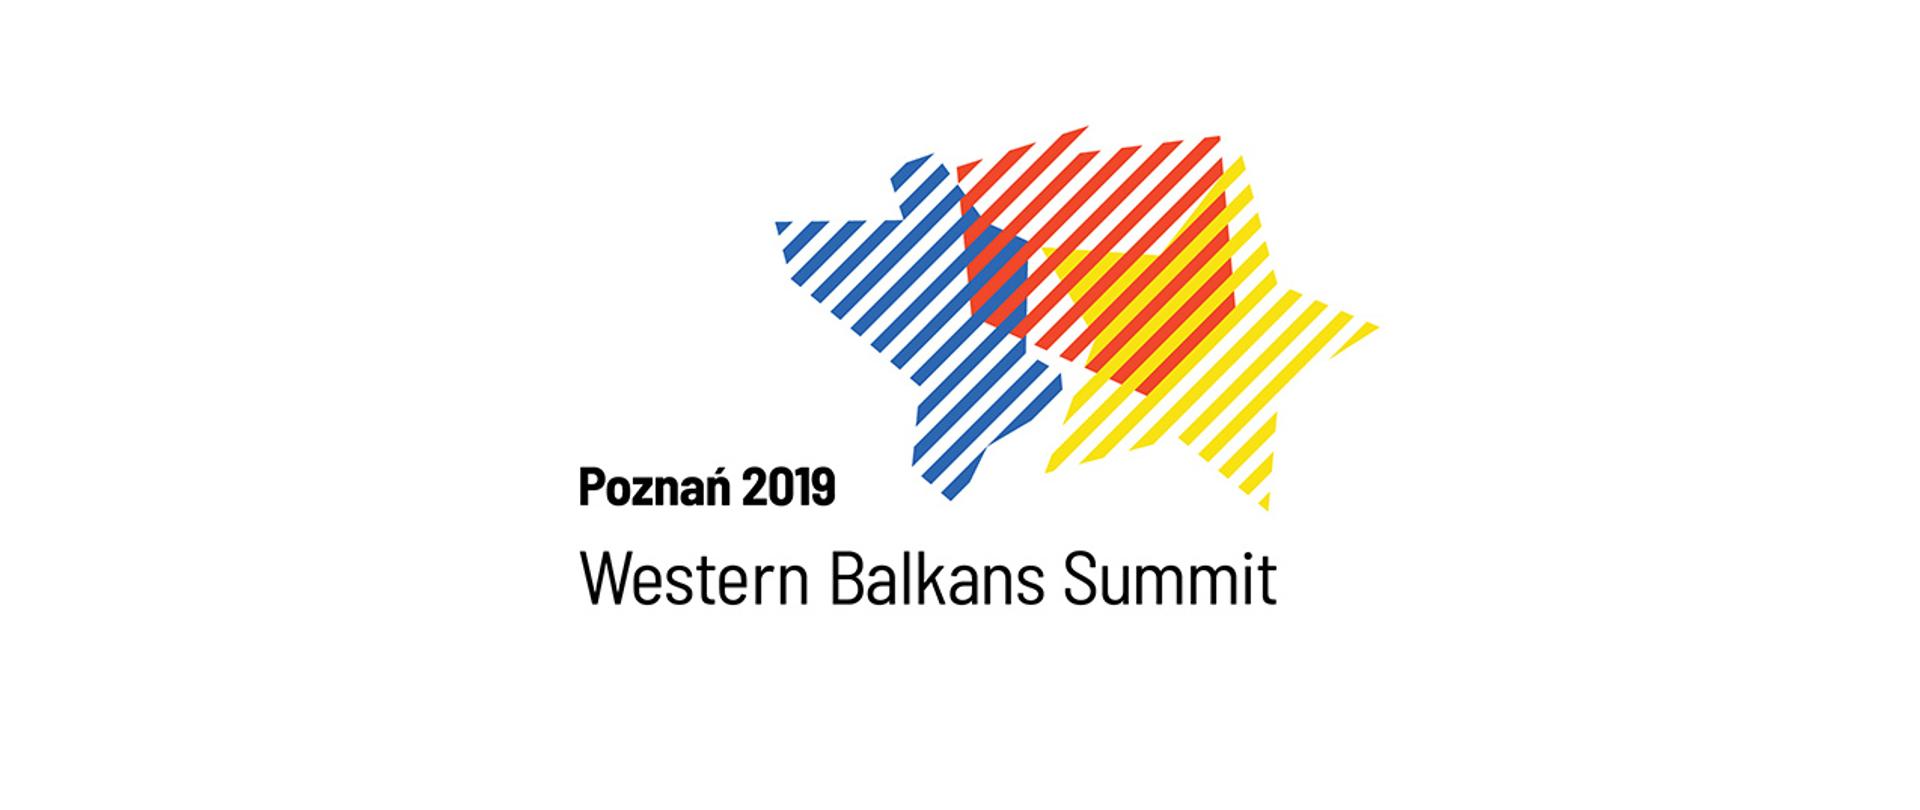 Western Balkans Summit in Poznan